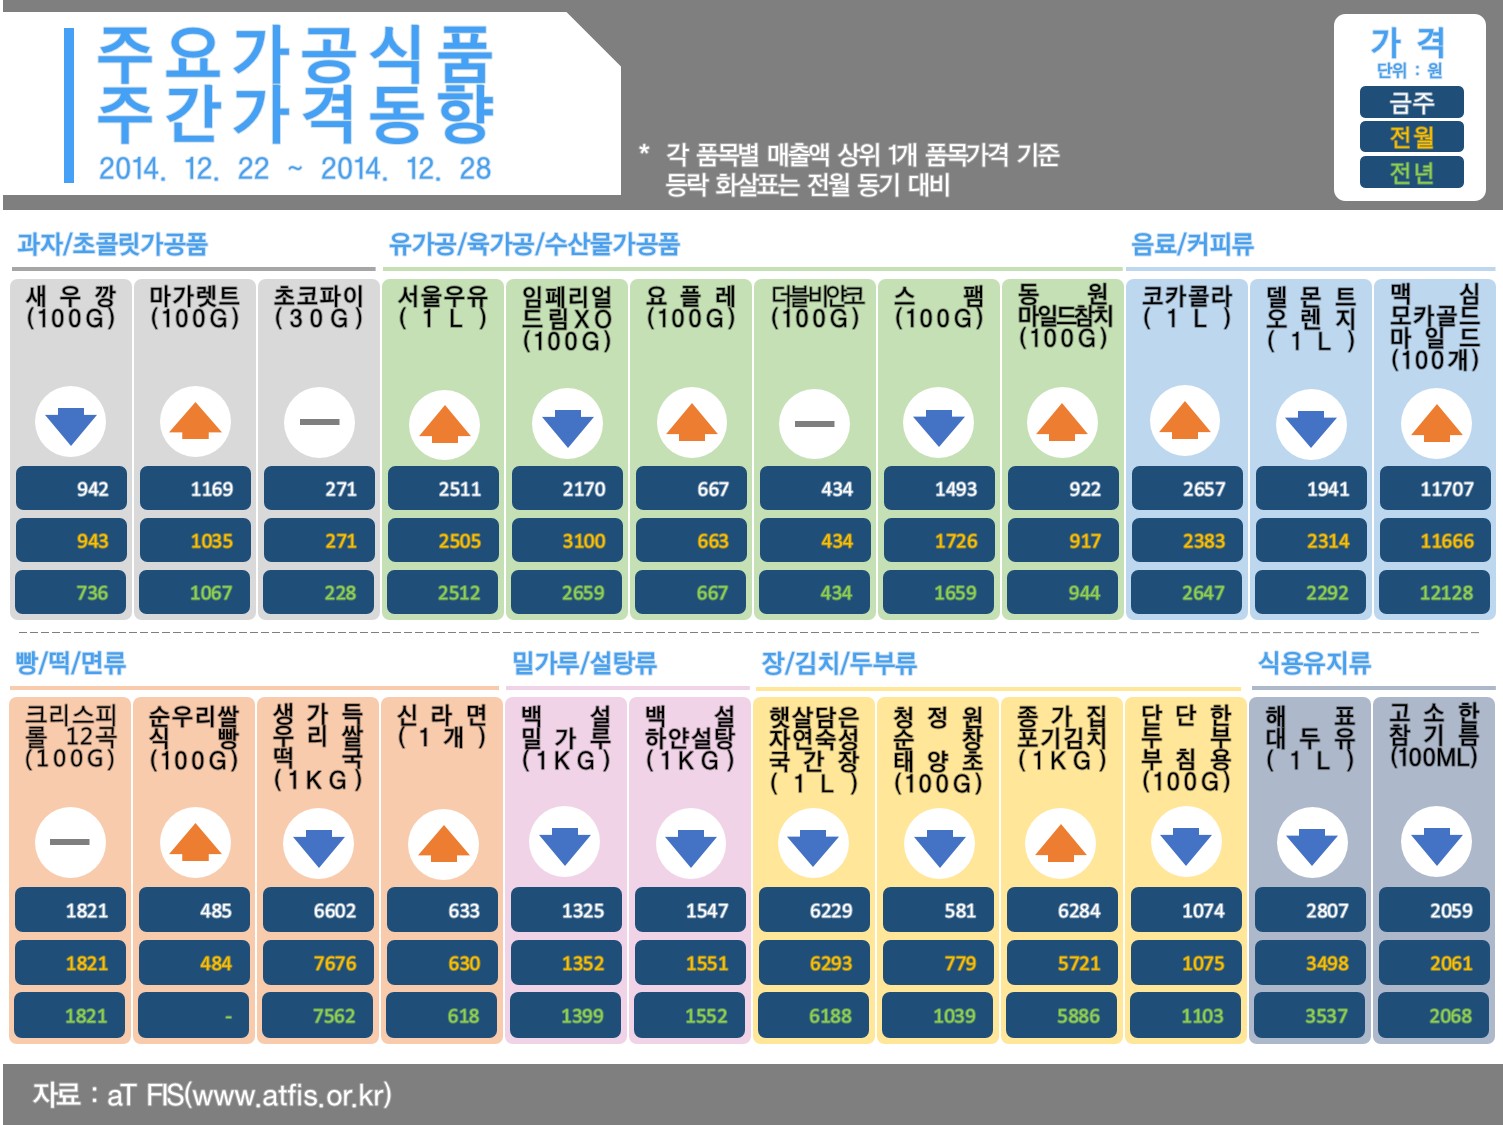 주요 가공식품 주간가격 동향 (2015년 1월 첫째주)